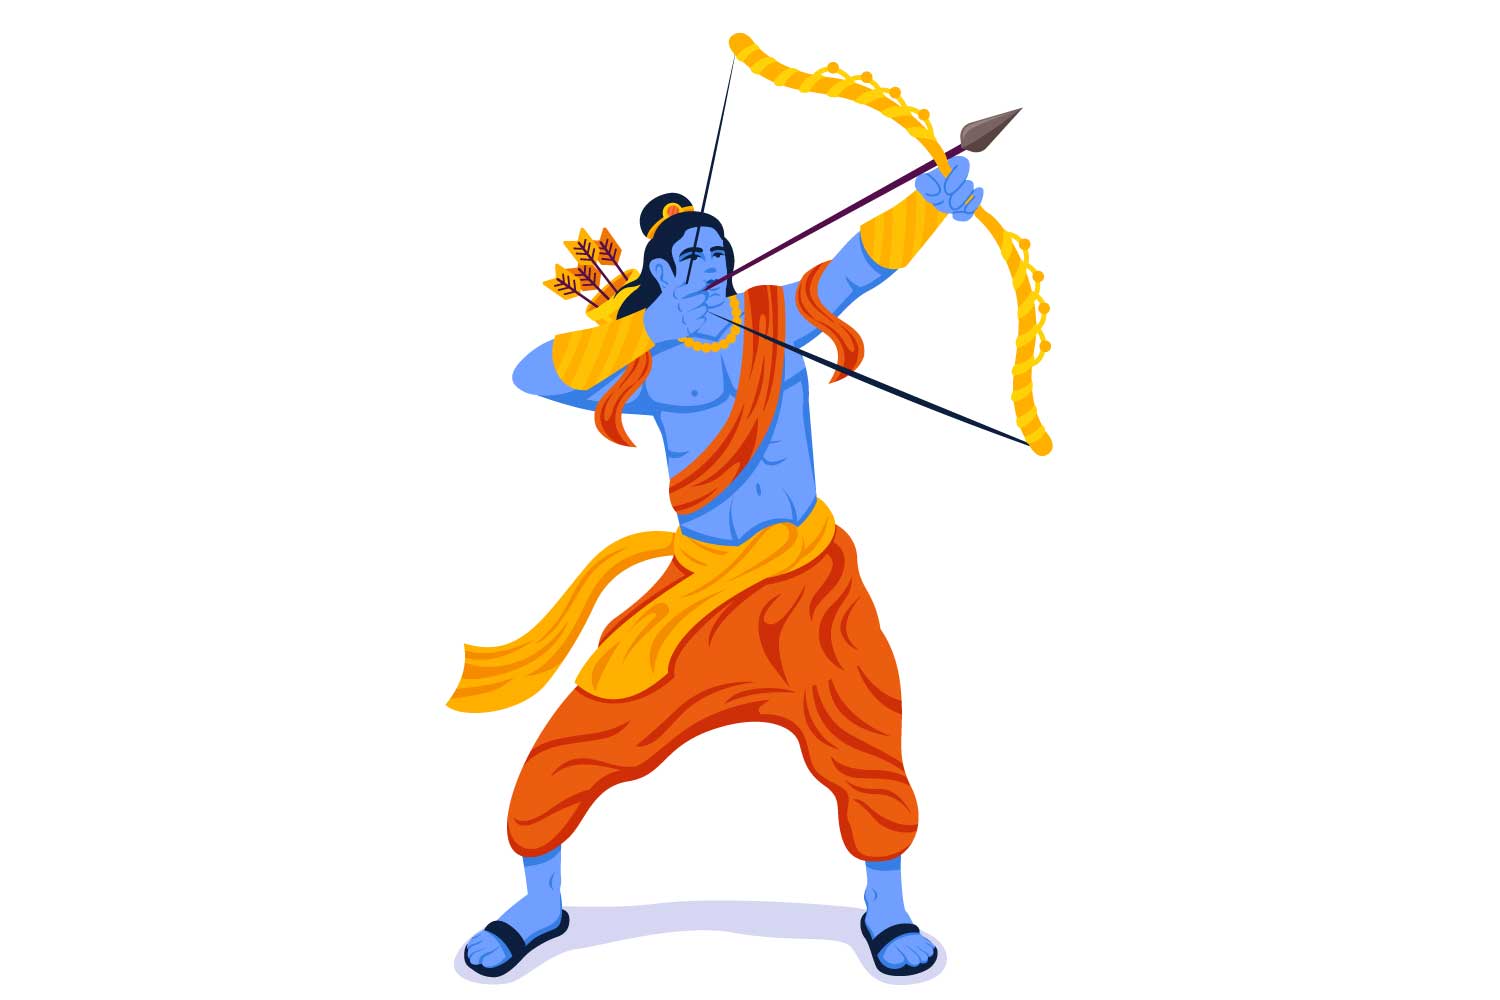 रामायण क्या है? | What is Ramayana | रामायण किसने लिखा था | Who Wrote Ramayana | रामायण क्यों पढ़नी चाहिए | Ramayana Shayari Status Quotes Caption in Hindi for Social Media